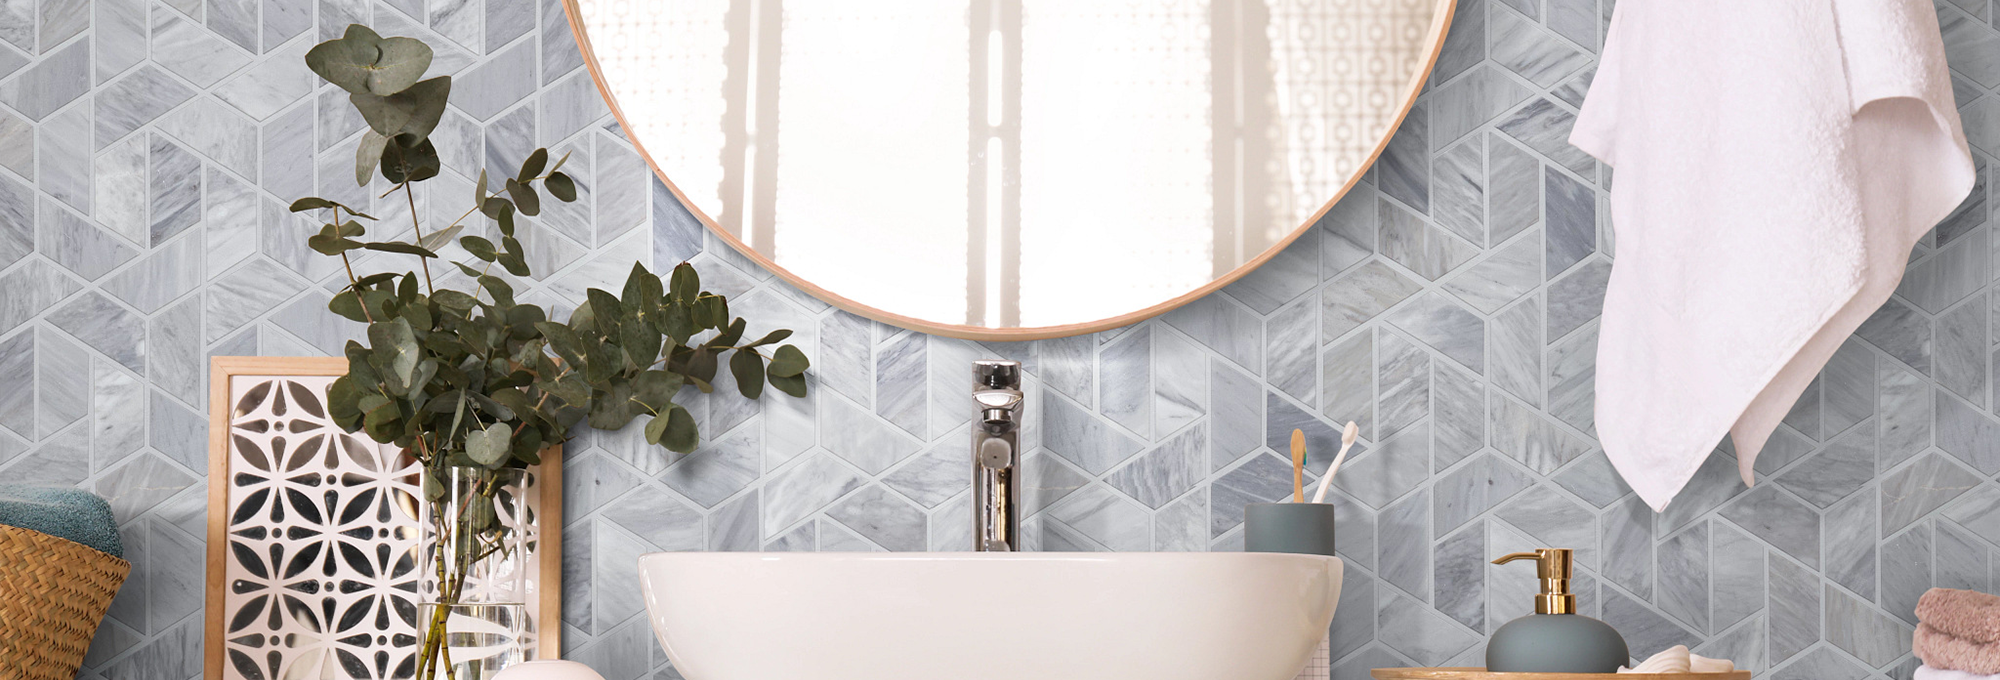 mirror and a sink bath - shamrockcarpets